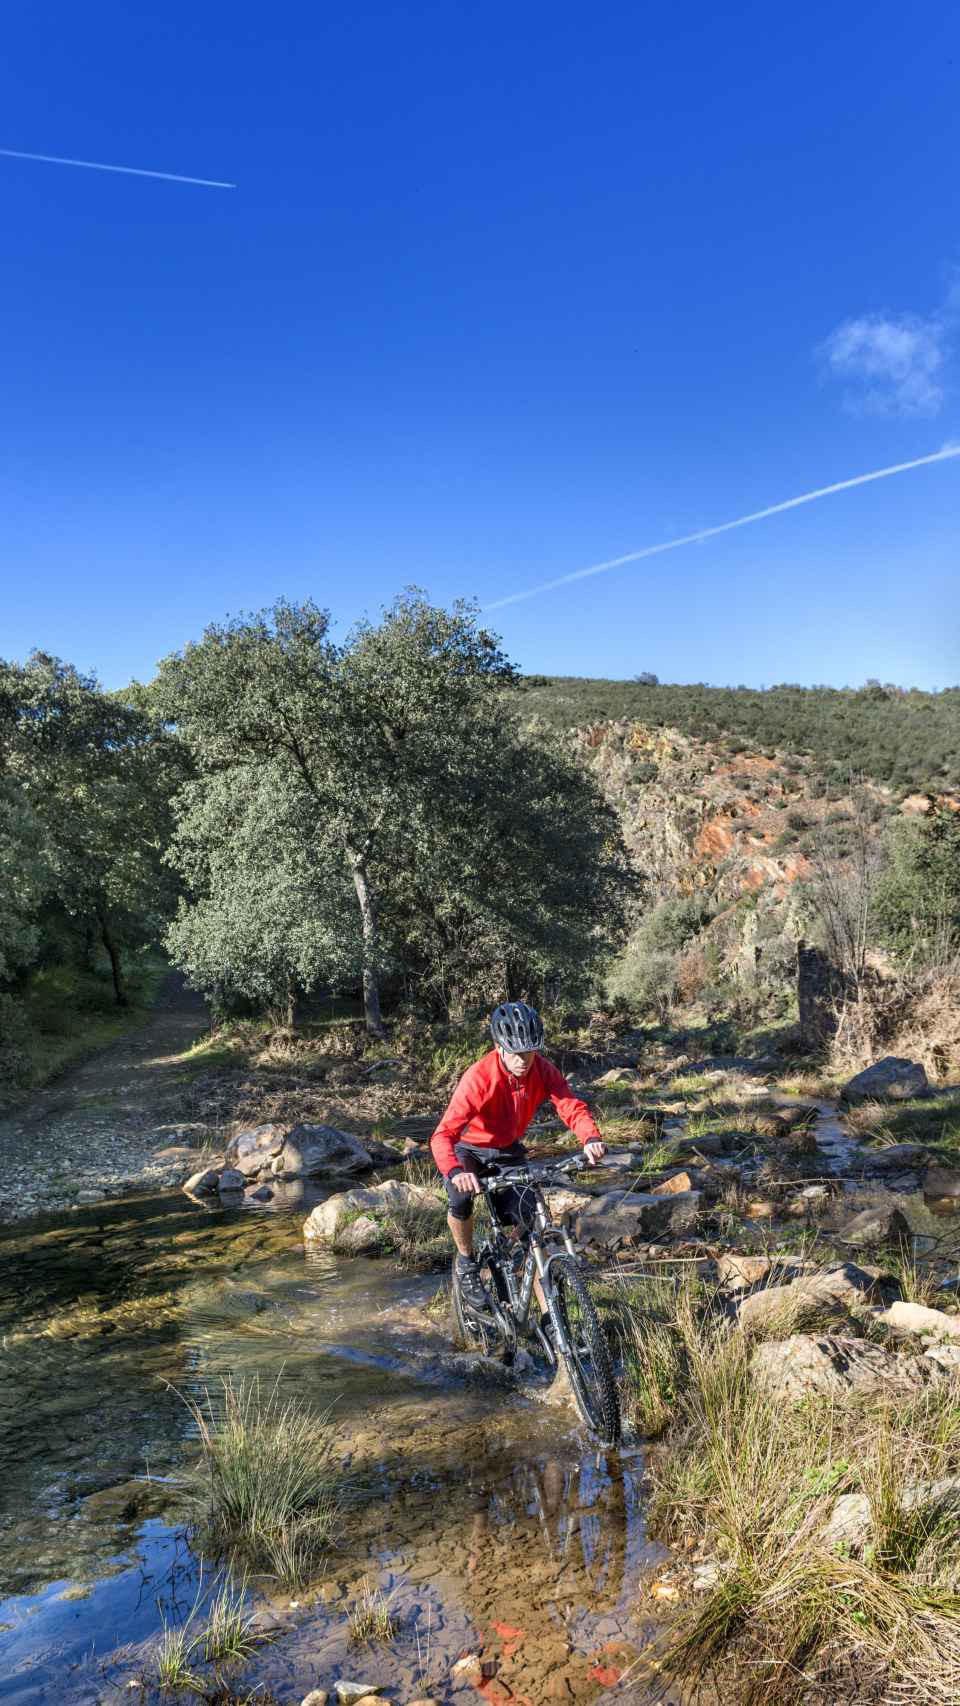 © Turismo de Castilla-La Mancha | David Blázquez